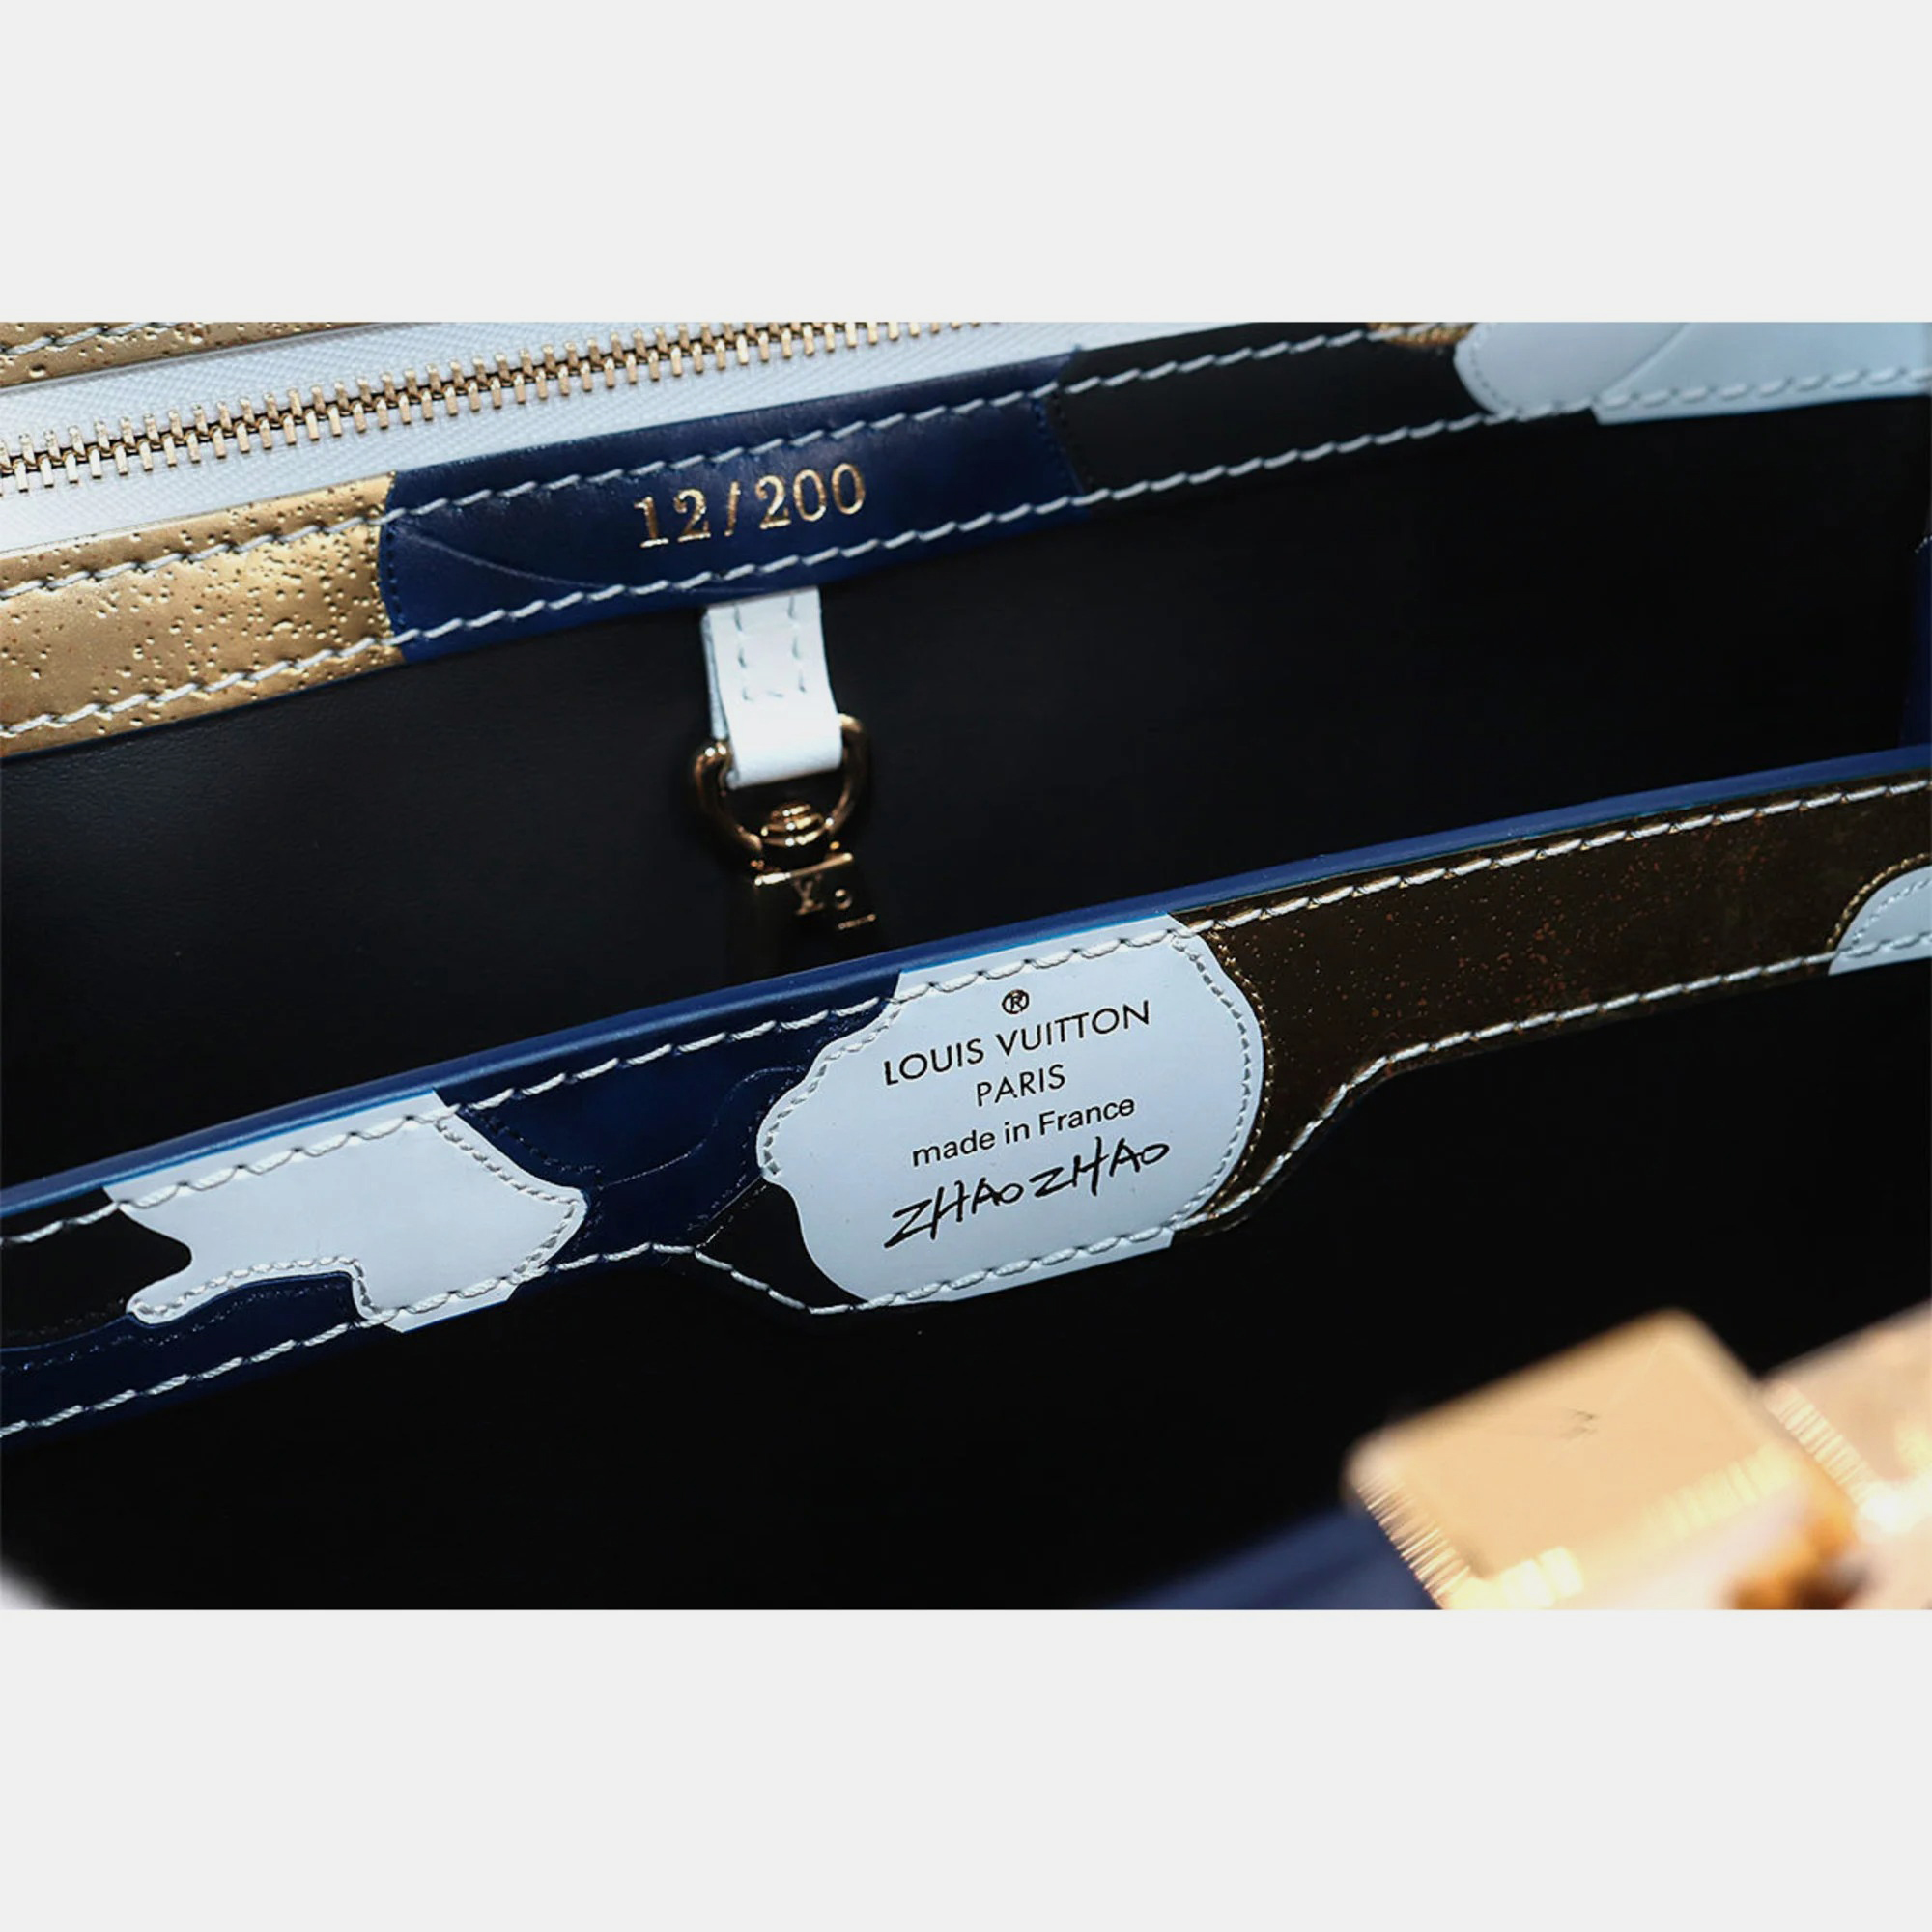 Louis Vuitton Multicolor Leather Capucines MM Top Handle Bag